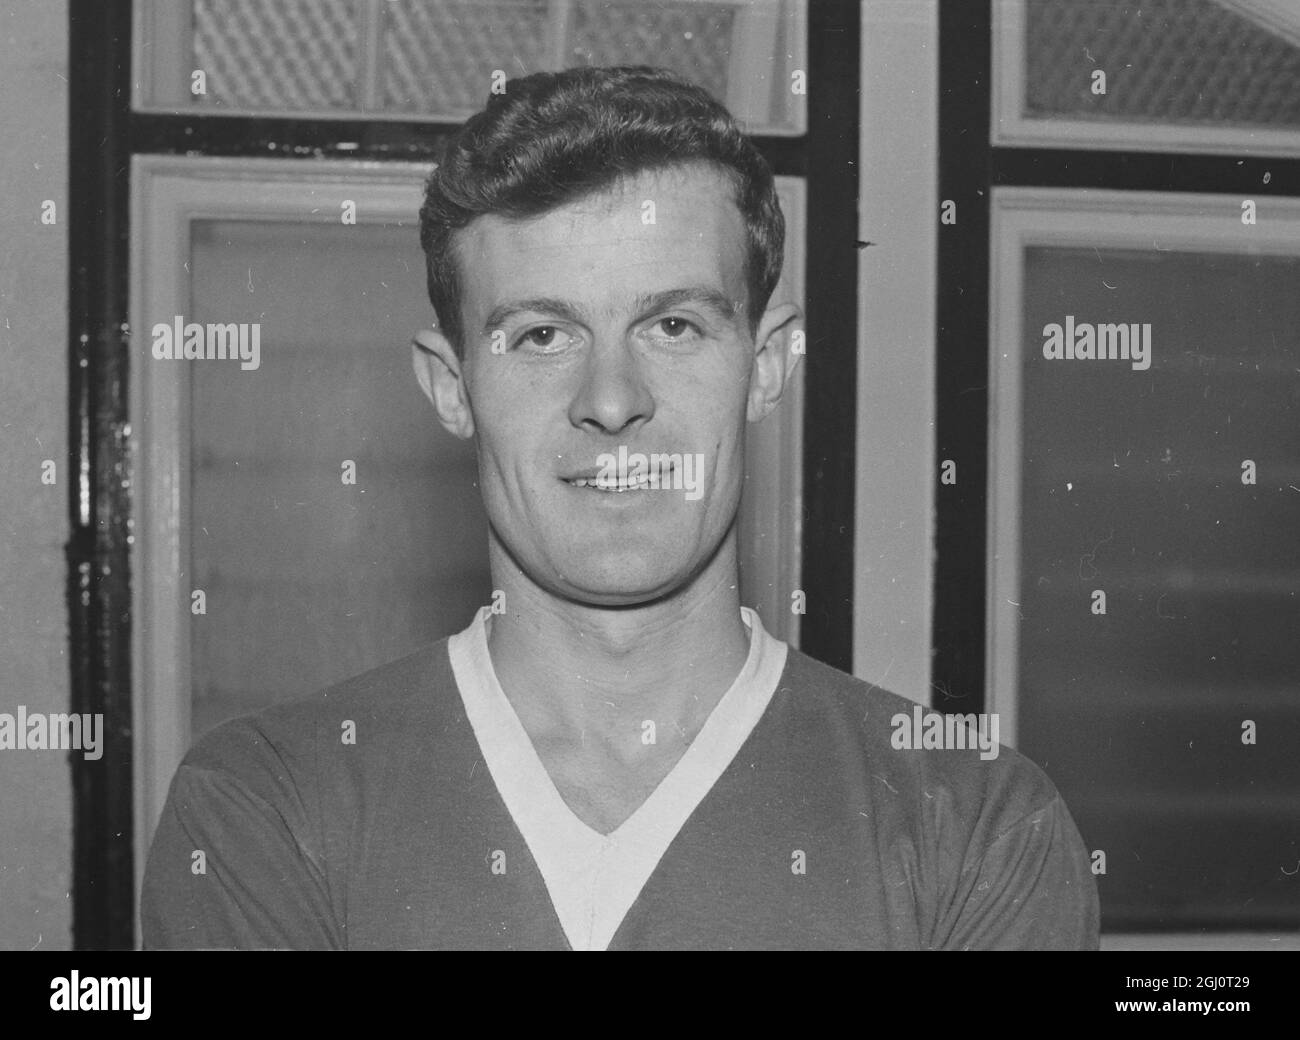 ALAN SHACKLETON DU CLUB DE FOOTBALL D'EVERTON 18 JANVIER 1960 Banque D'Images